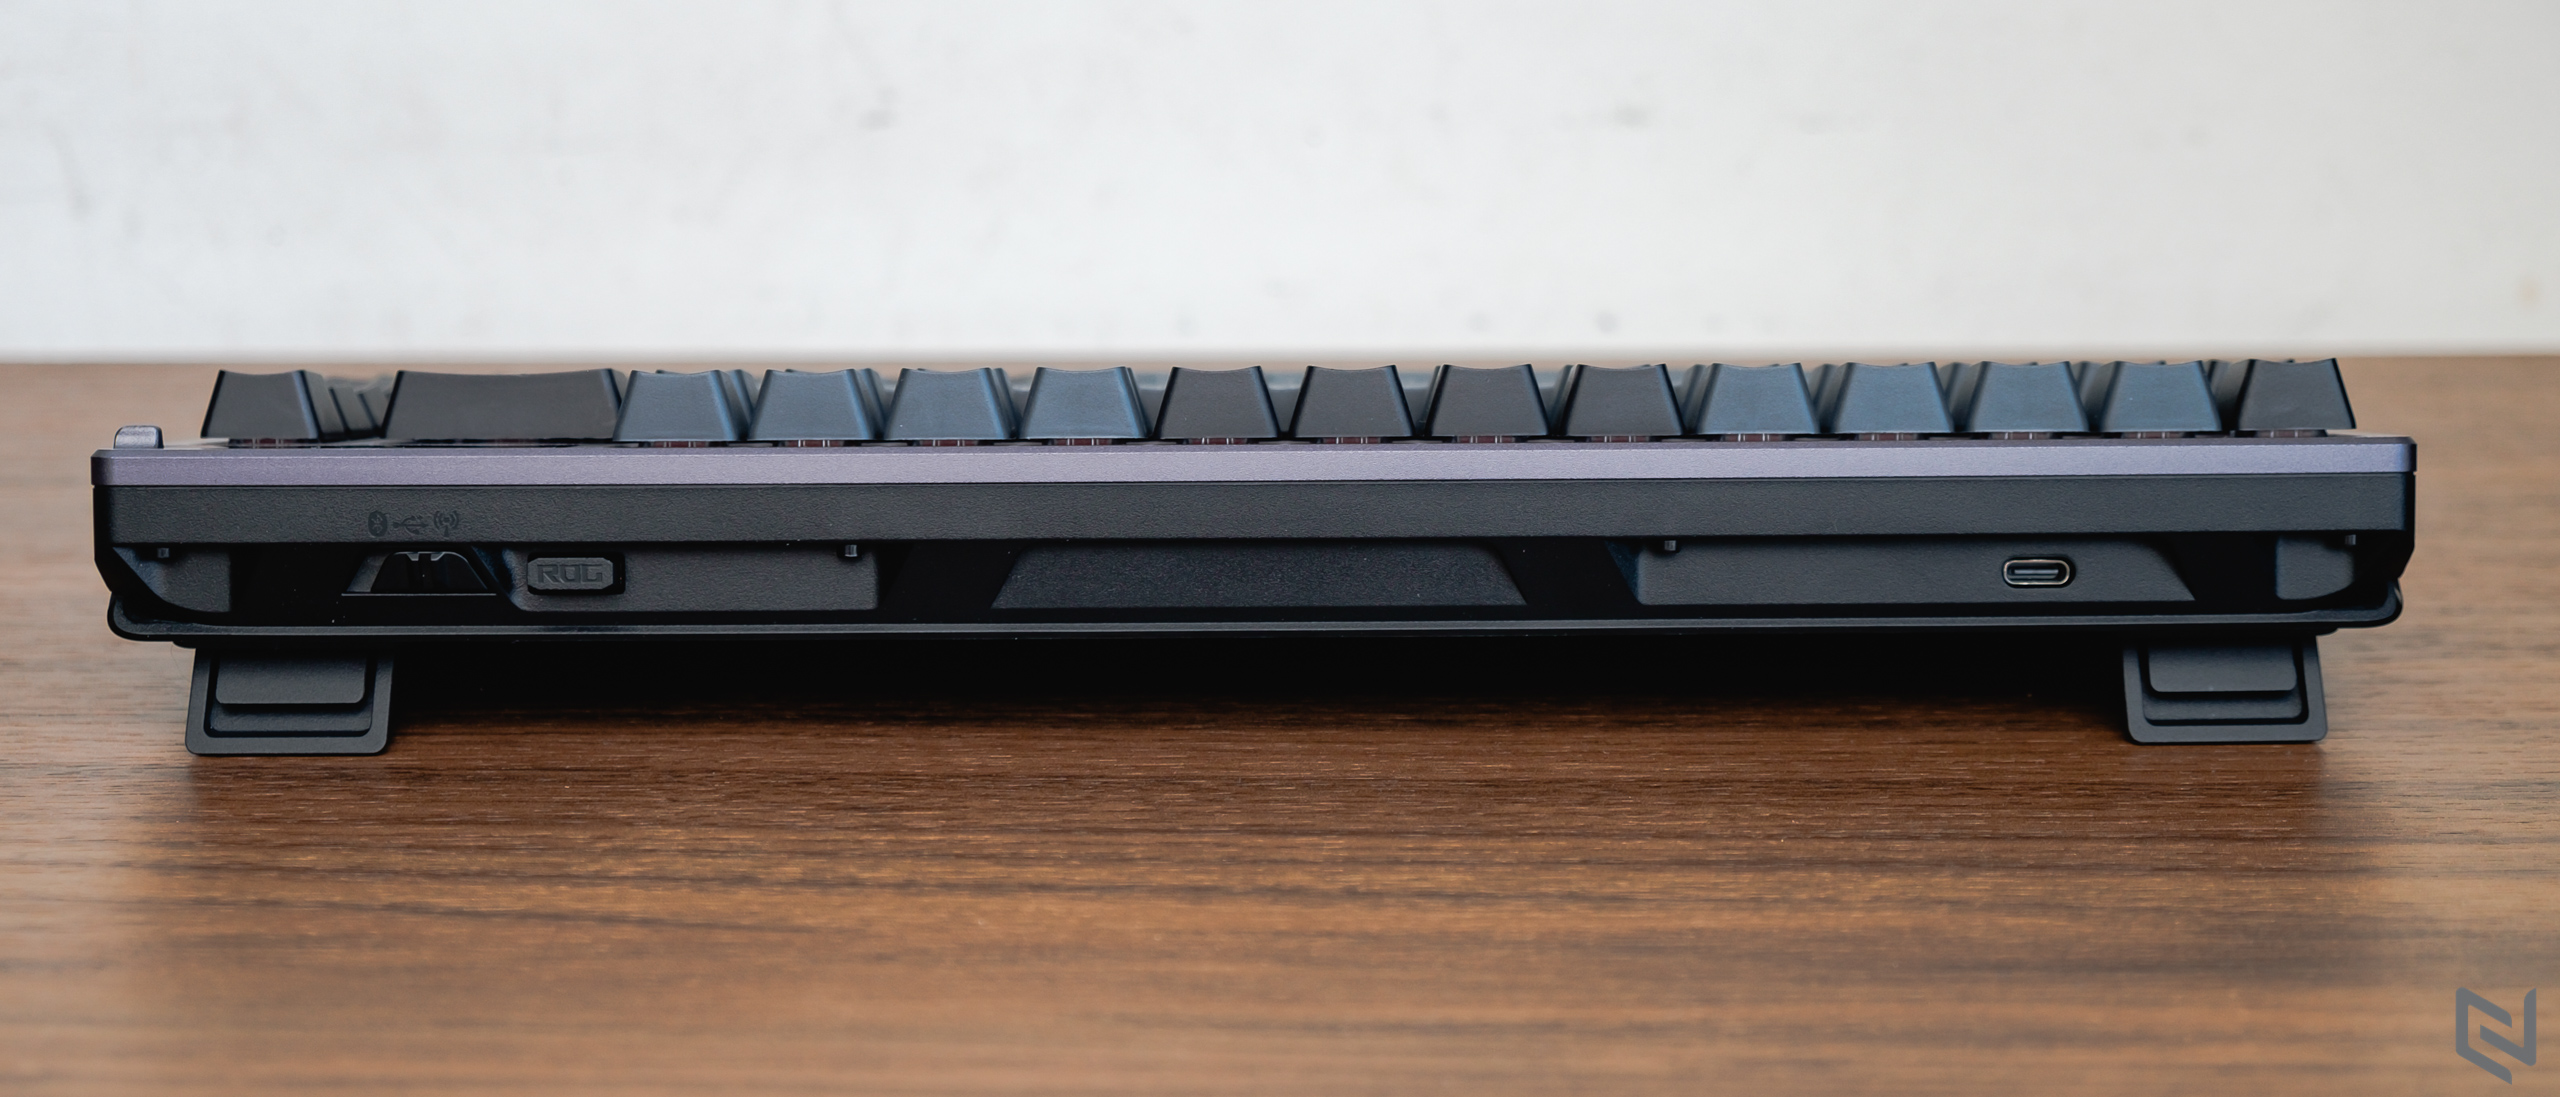 Đánh giá bàn phím cơ ASUS ROG Azoth: Kiểu dáng 75% gọn gàng, màn hình OLED với núm gạt, đặc biệt là bộ lube đi kèm